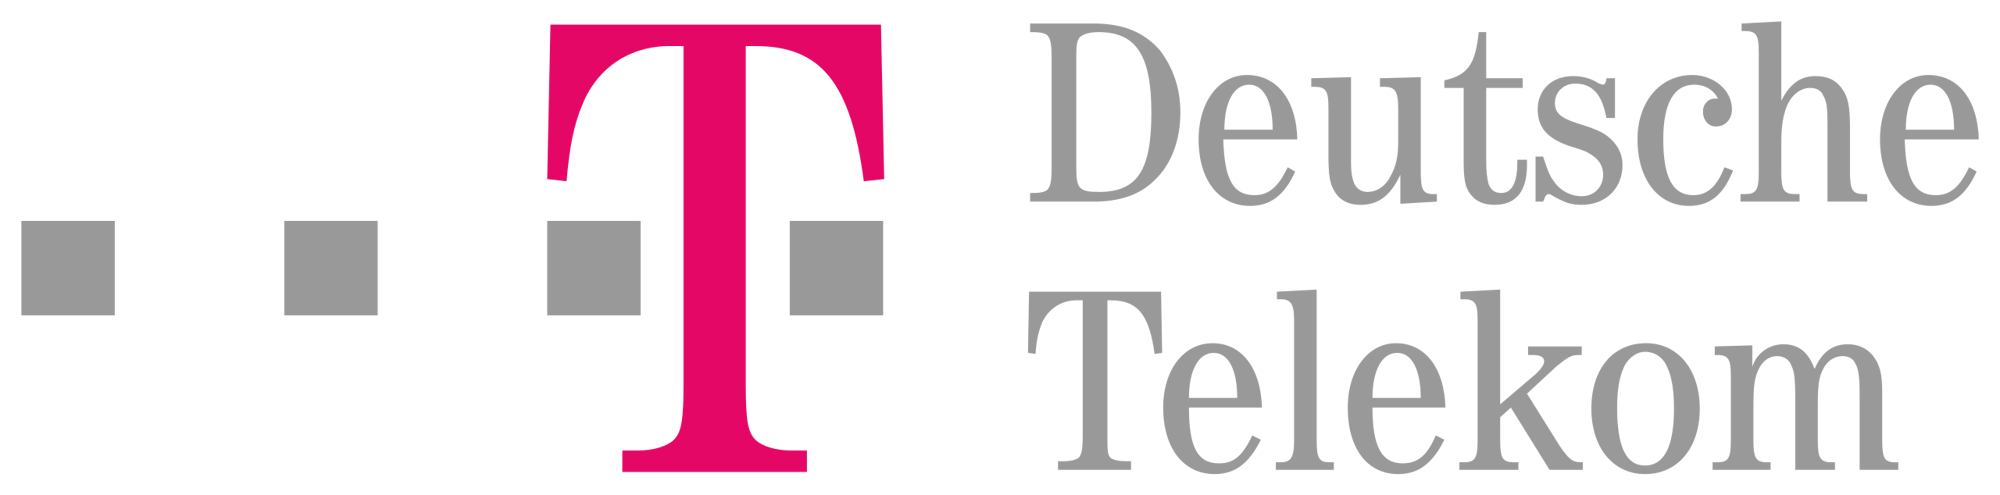 Deutsche_Telekom_logo